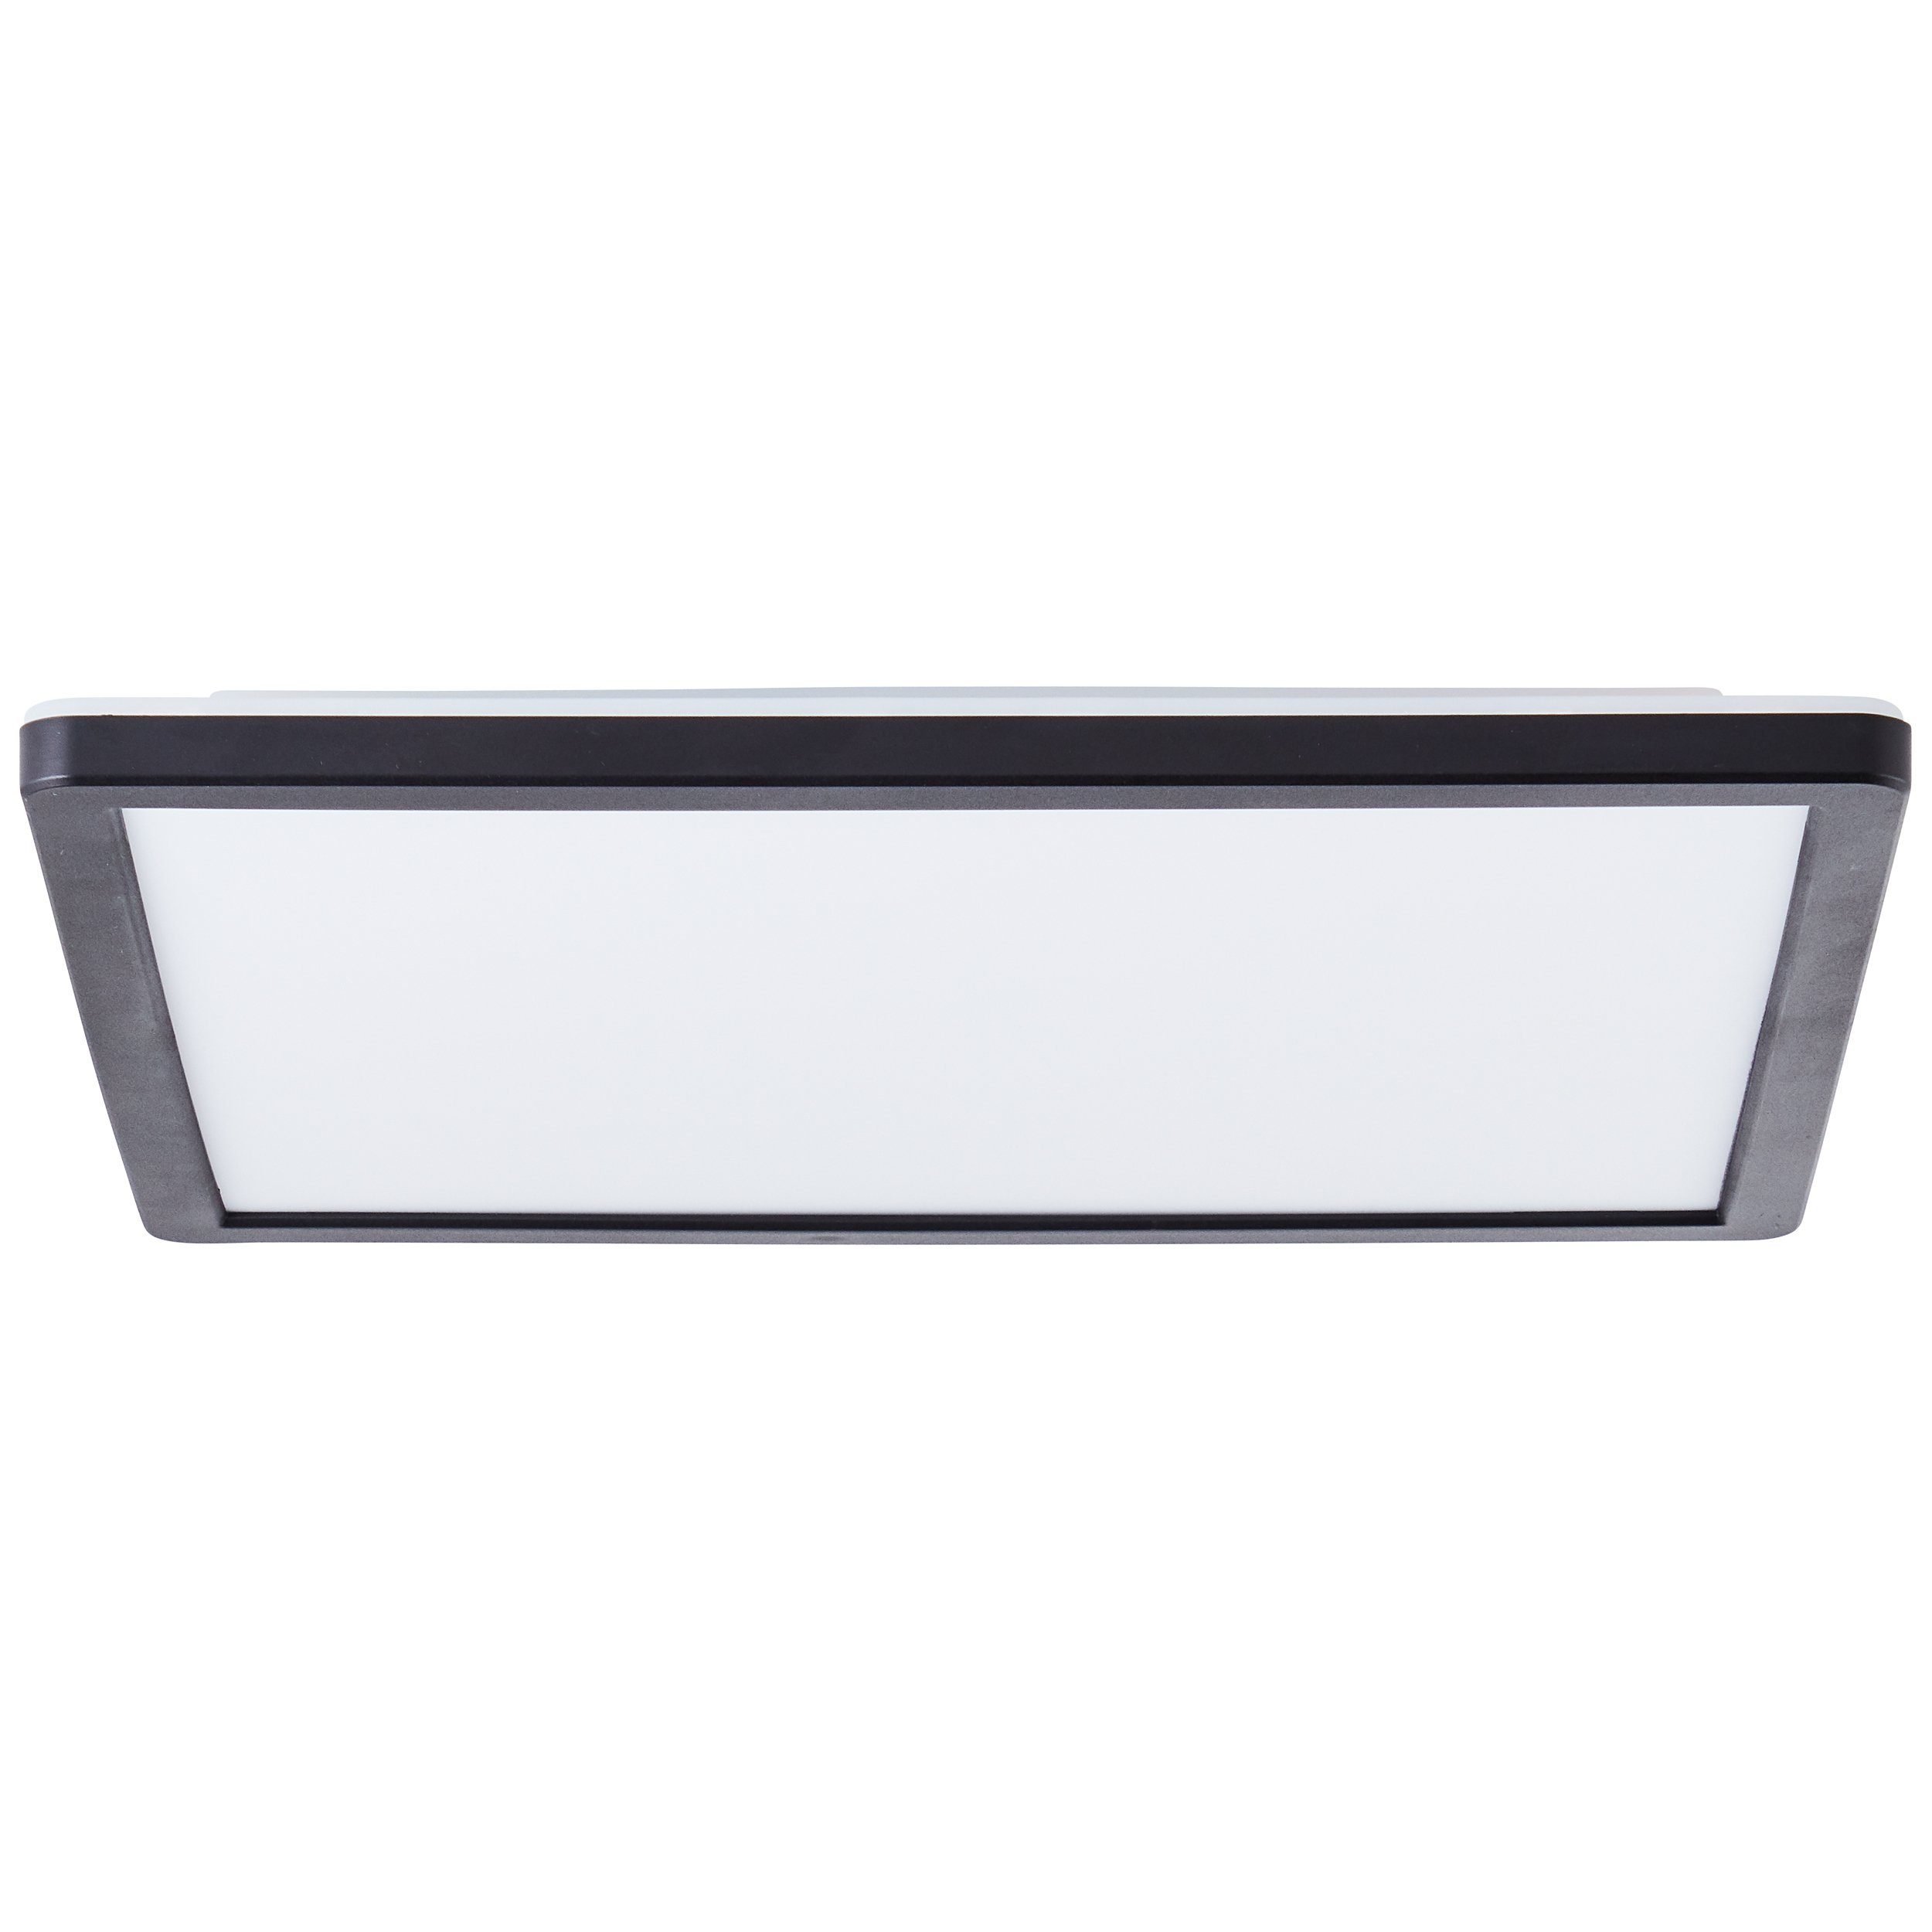 Kunststoff LED Fernbe weiß/schwarz Saltery Saltery Brilliant weiß/schwarz, 30x30cm Aufbauleuchte Deckenaufbau-Paneel Deckenaufbau-Paneel 30x30cm LED